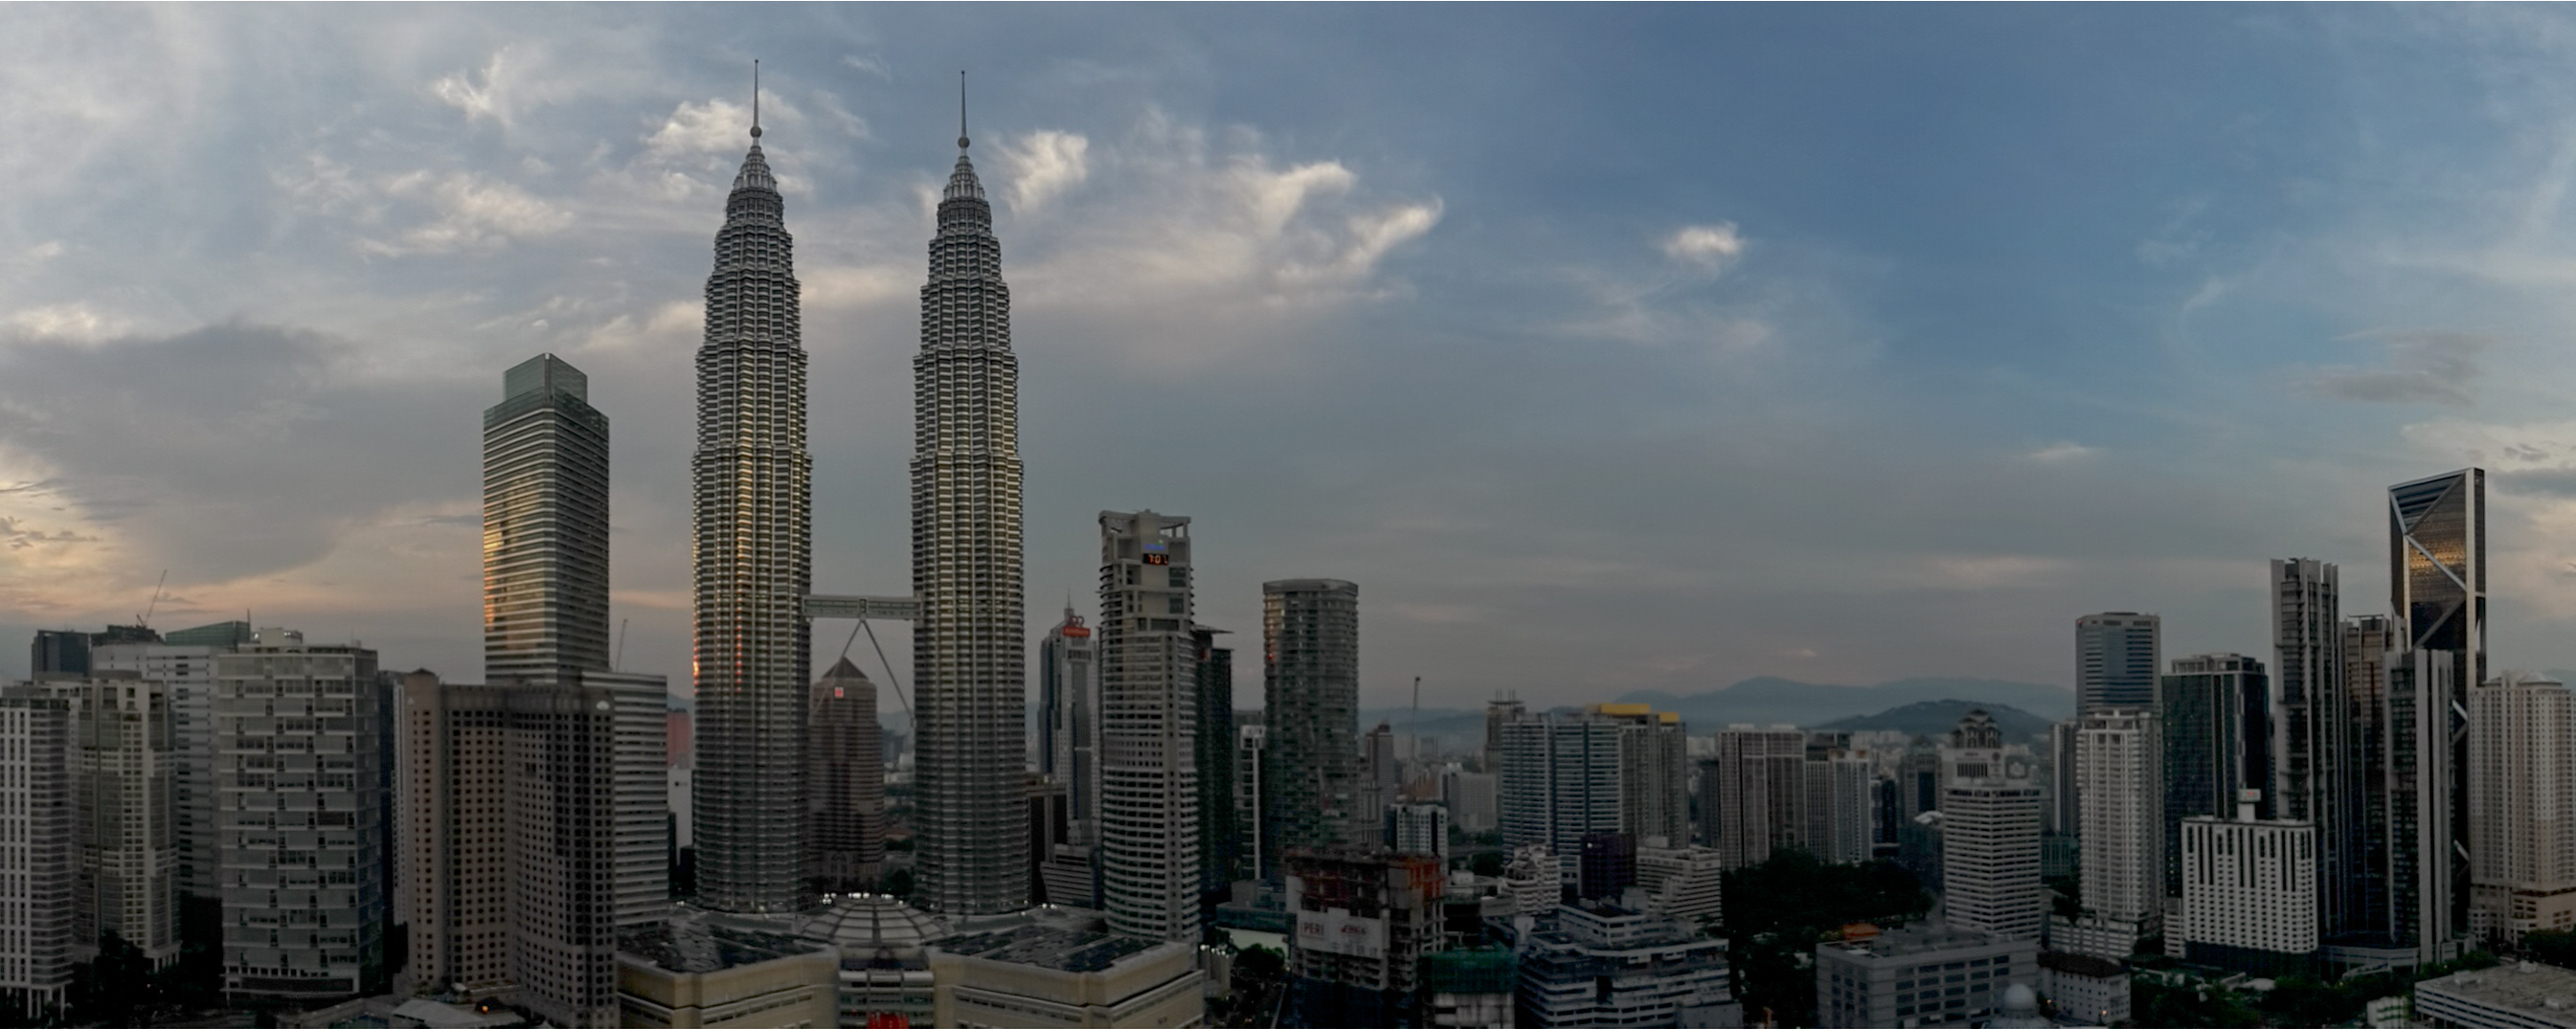 Skyline Petronas Towers Kuala Lumpur 2690x1075